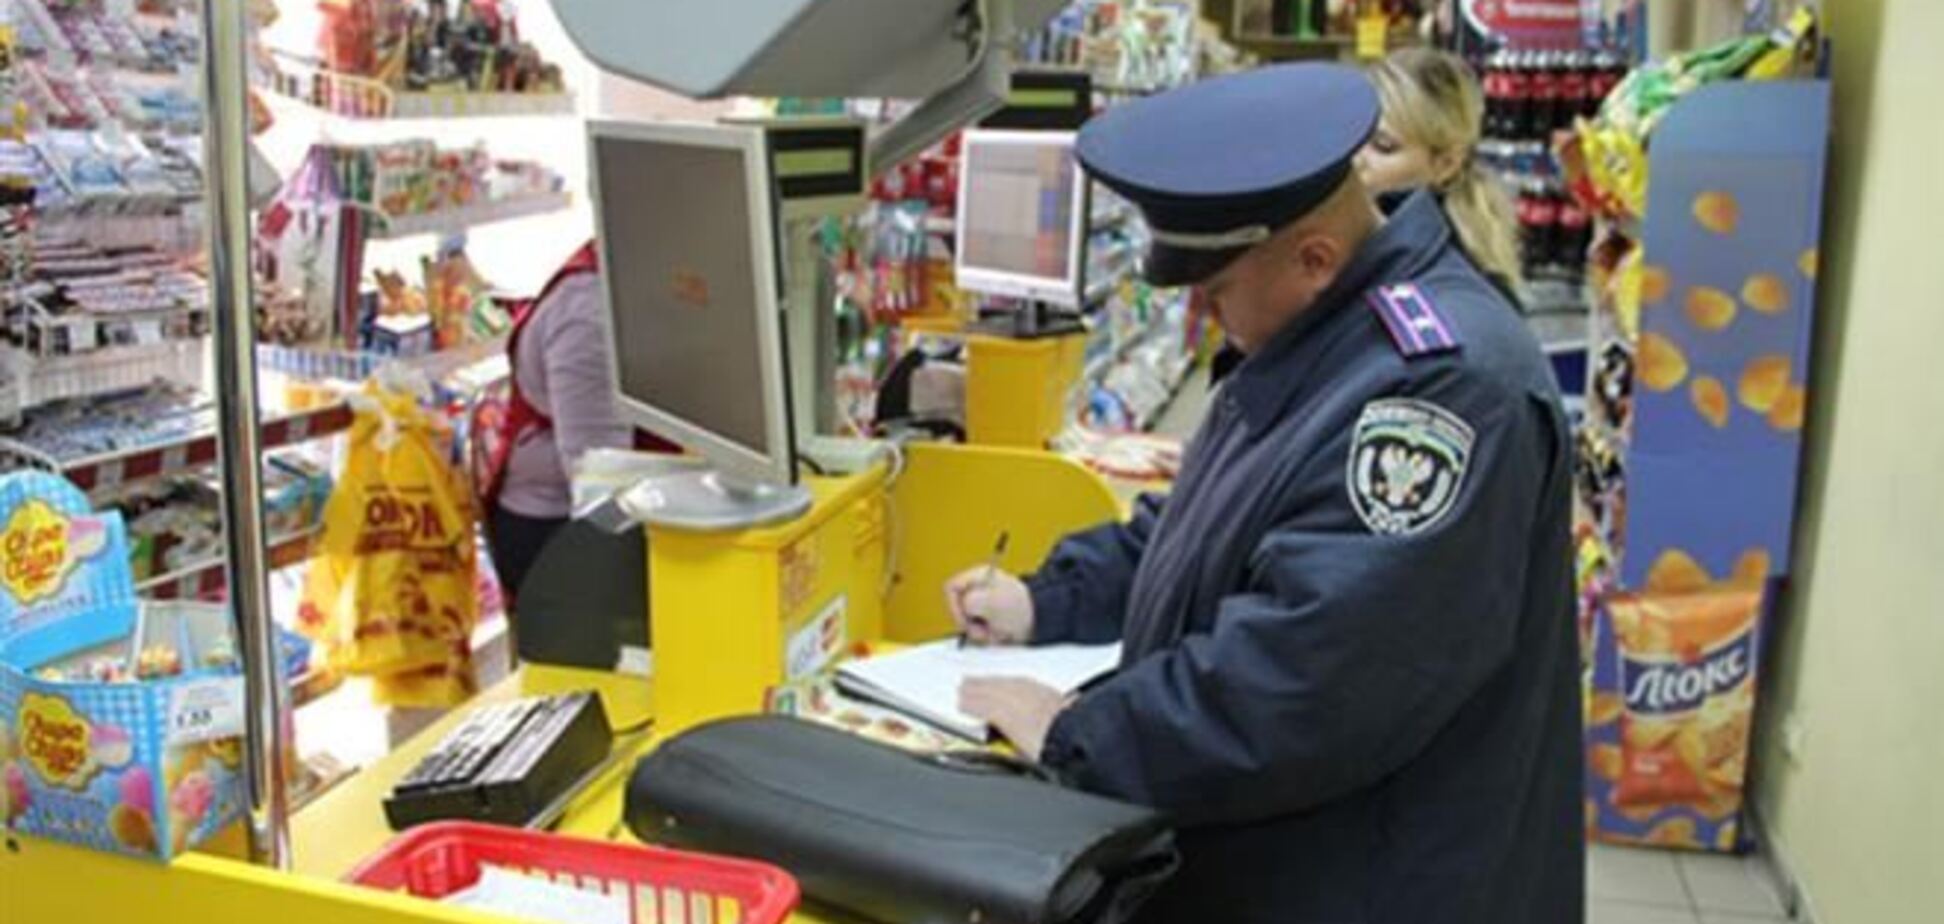 У Чернігові міліція затримала в супермаркеті п'яного чоловіка з гранатою